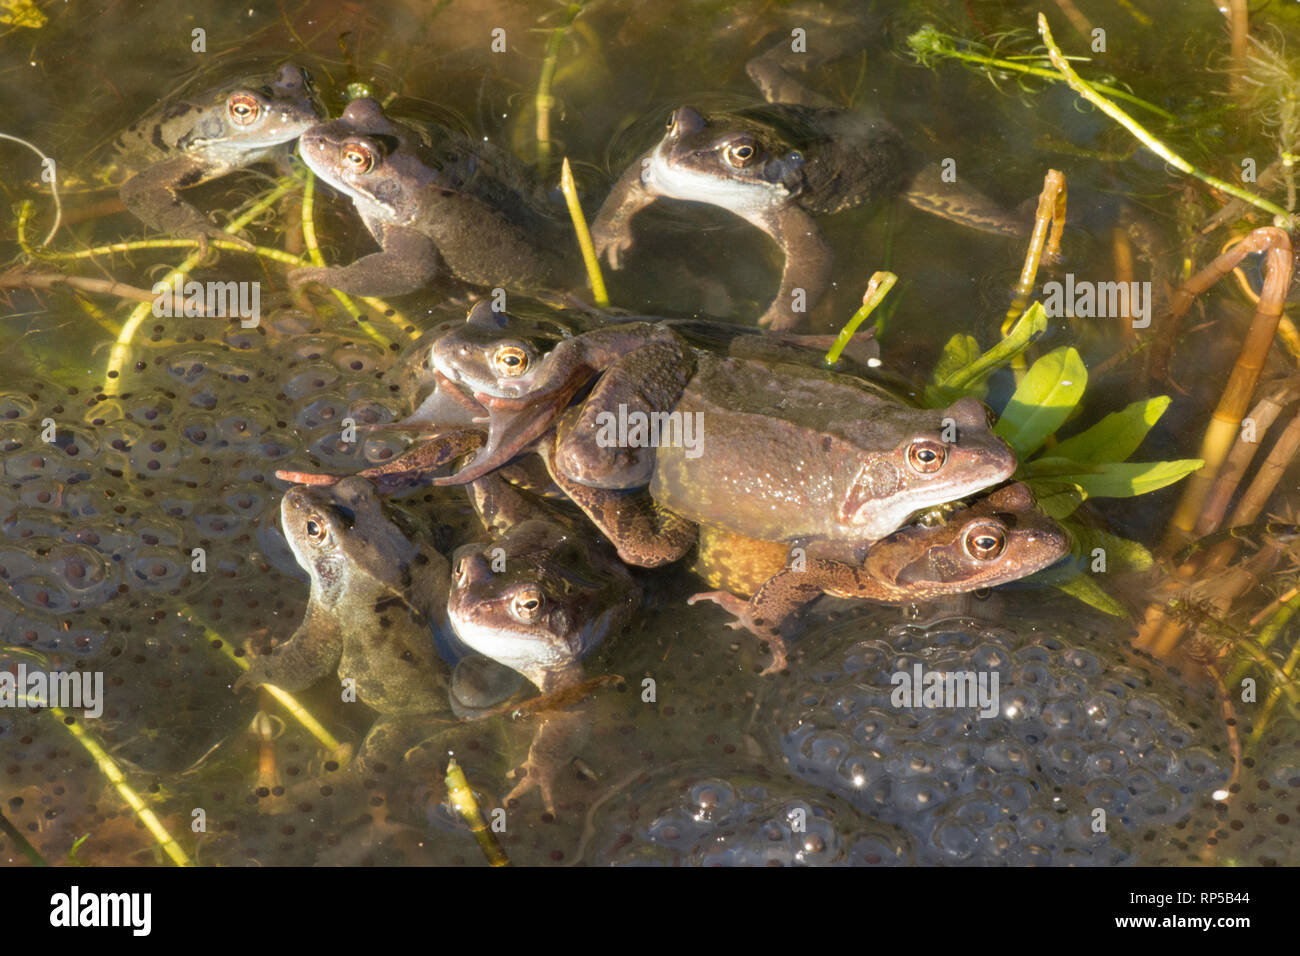 Rana comune, rana temporaria, una coppia maschio e femmina tra molti soggetti maschi in attesa su frog spawn per le femmine di arrivare per la deposizione delle uova, Foto Stock